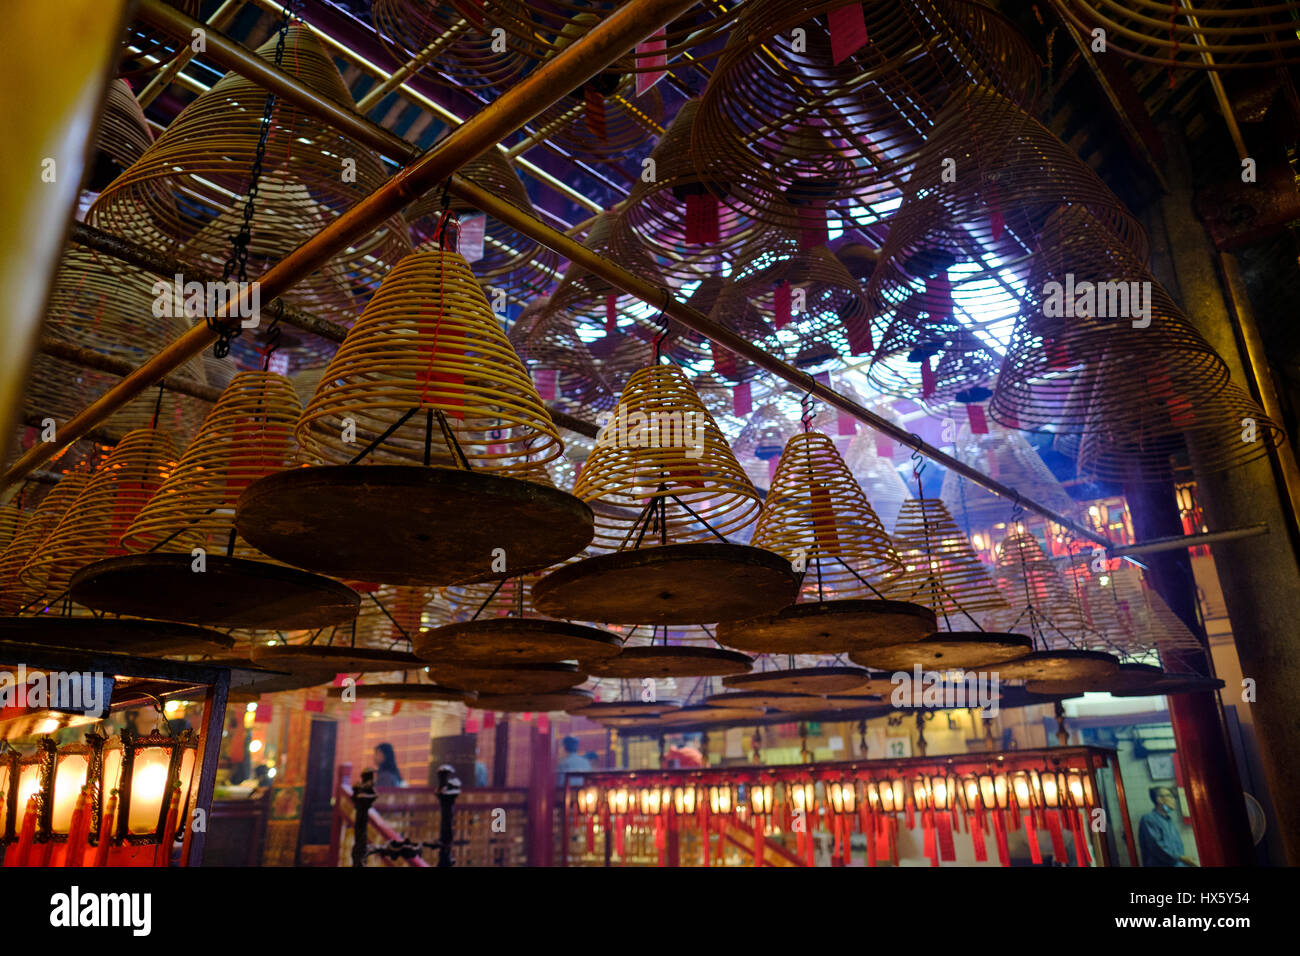 Grandi bobine di incenso che pendevano dal soffitto all'interno del Tempio di Man Mo, Hollywood Road, Sheung Wan, Isola di Hong Kong, Cina. Foto Stock